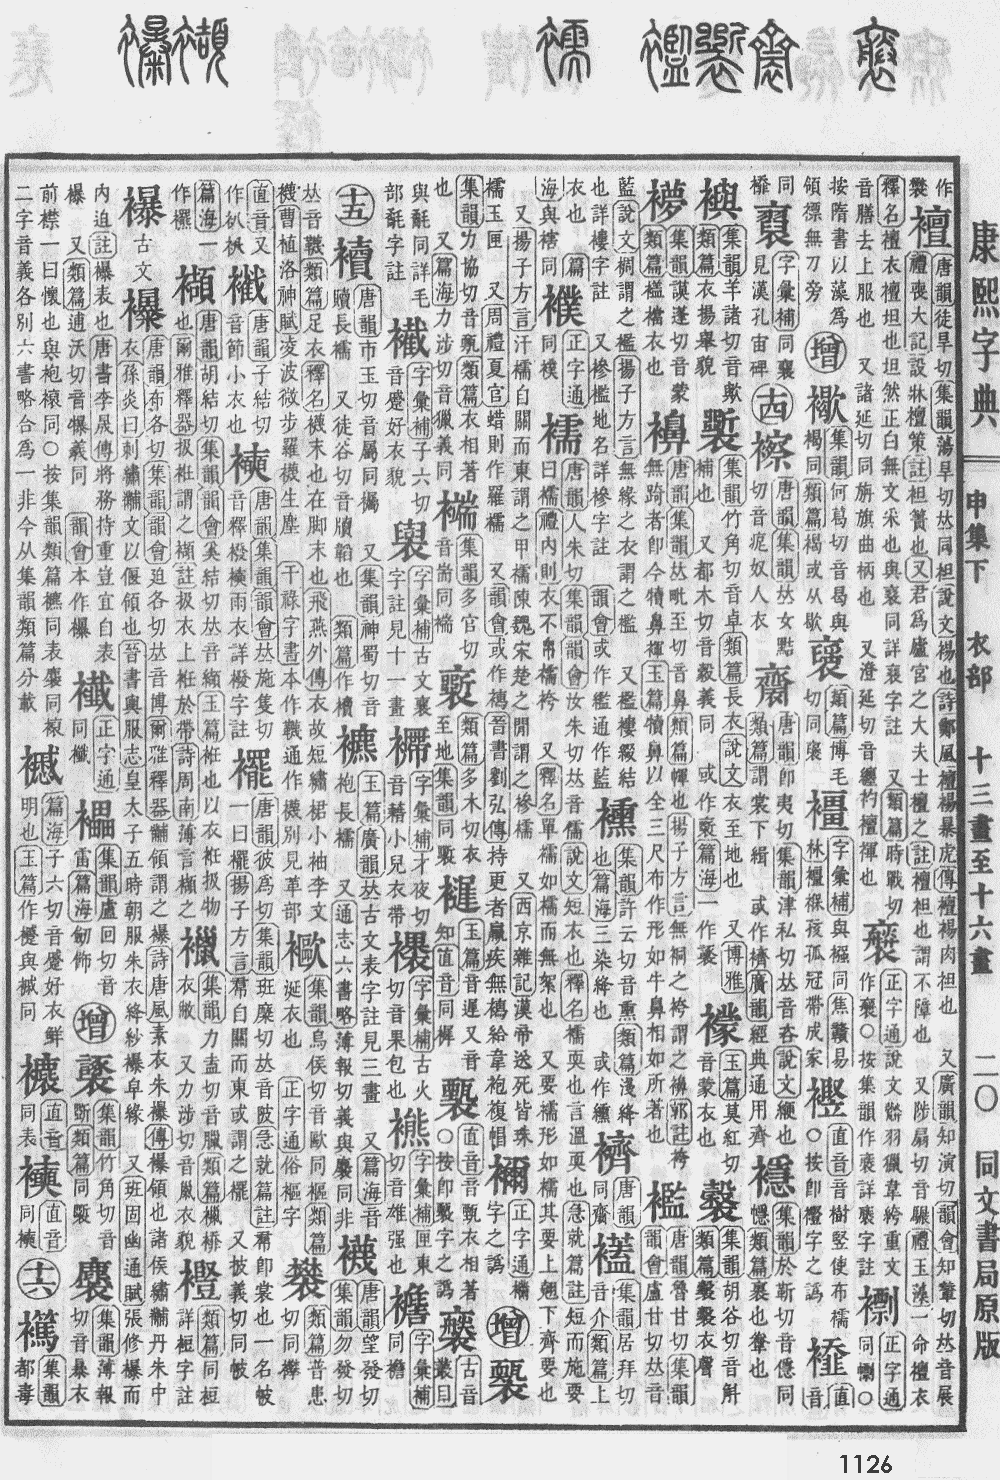 康熙字典第1126页图片